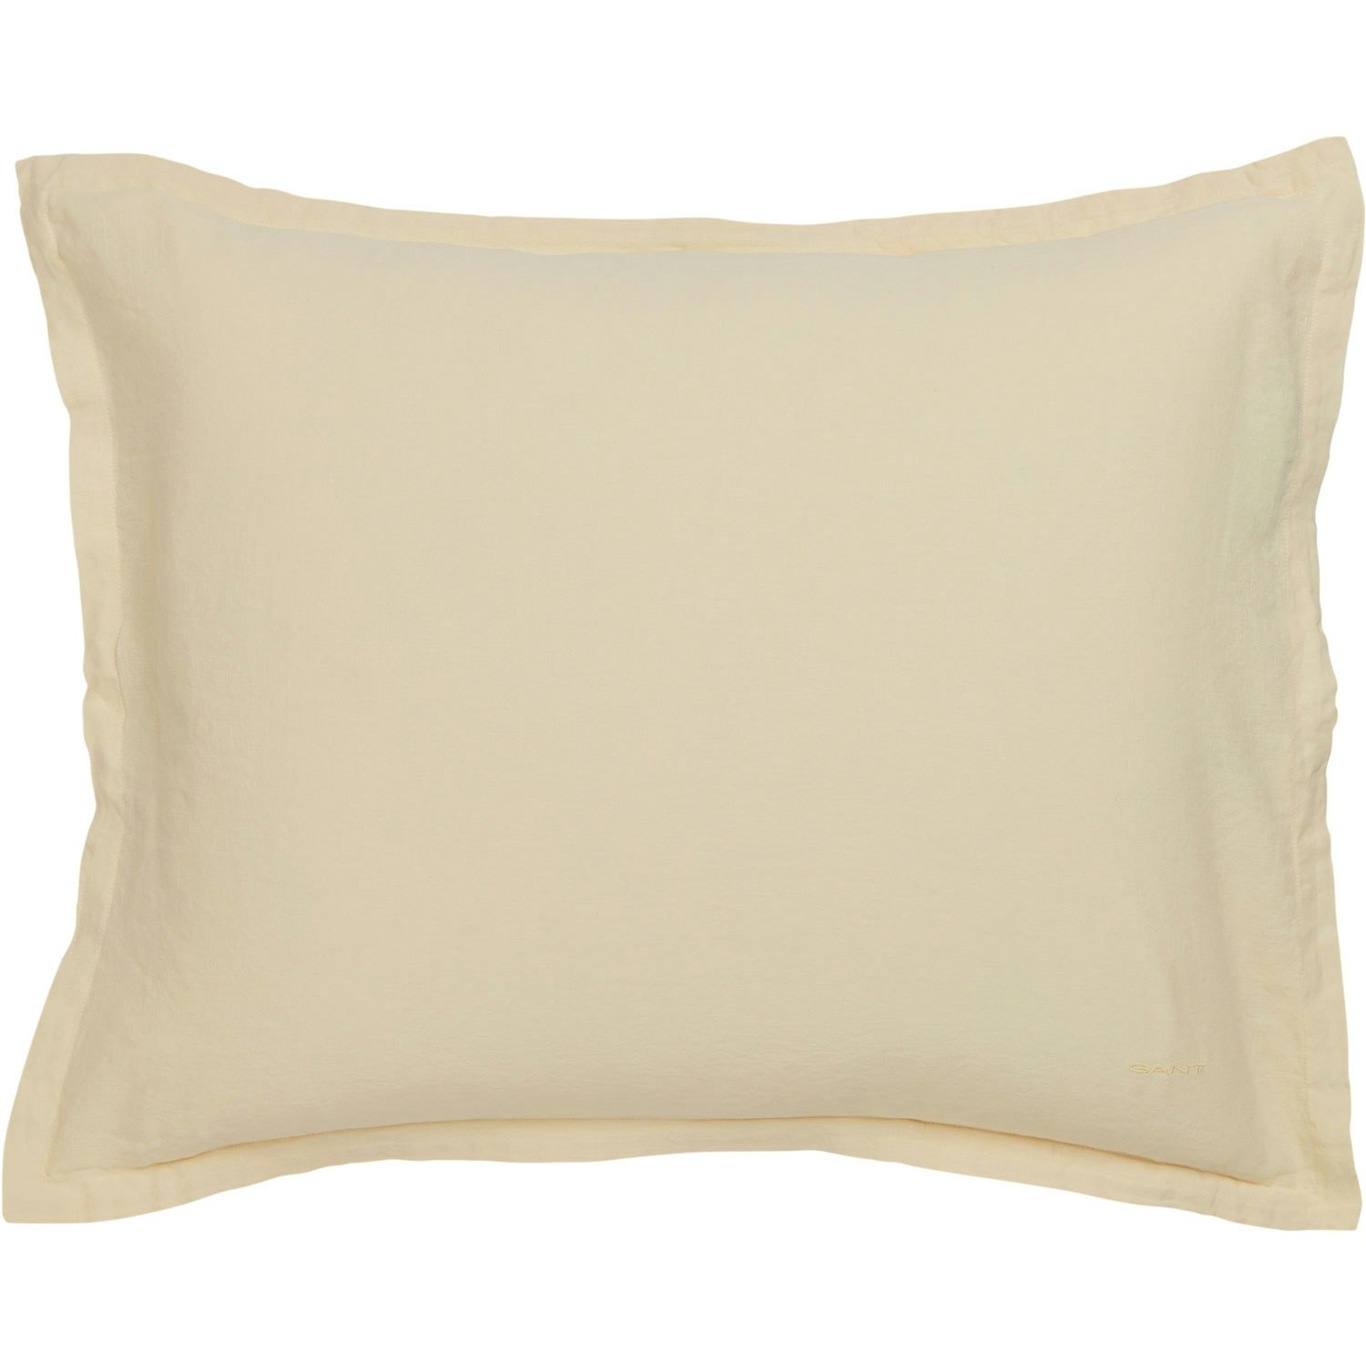 Cotton Linen Kissenbezug 50x60 cm, Butter Yellow